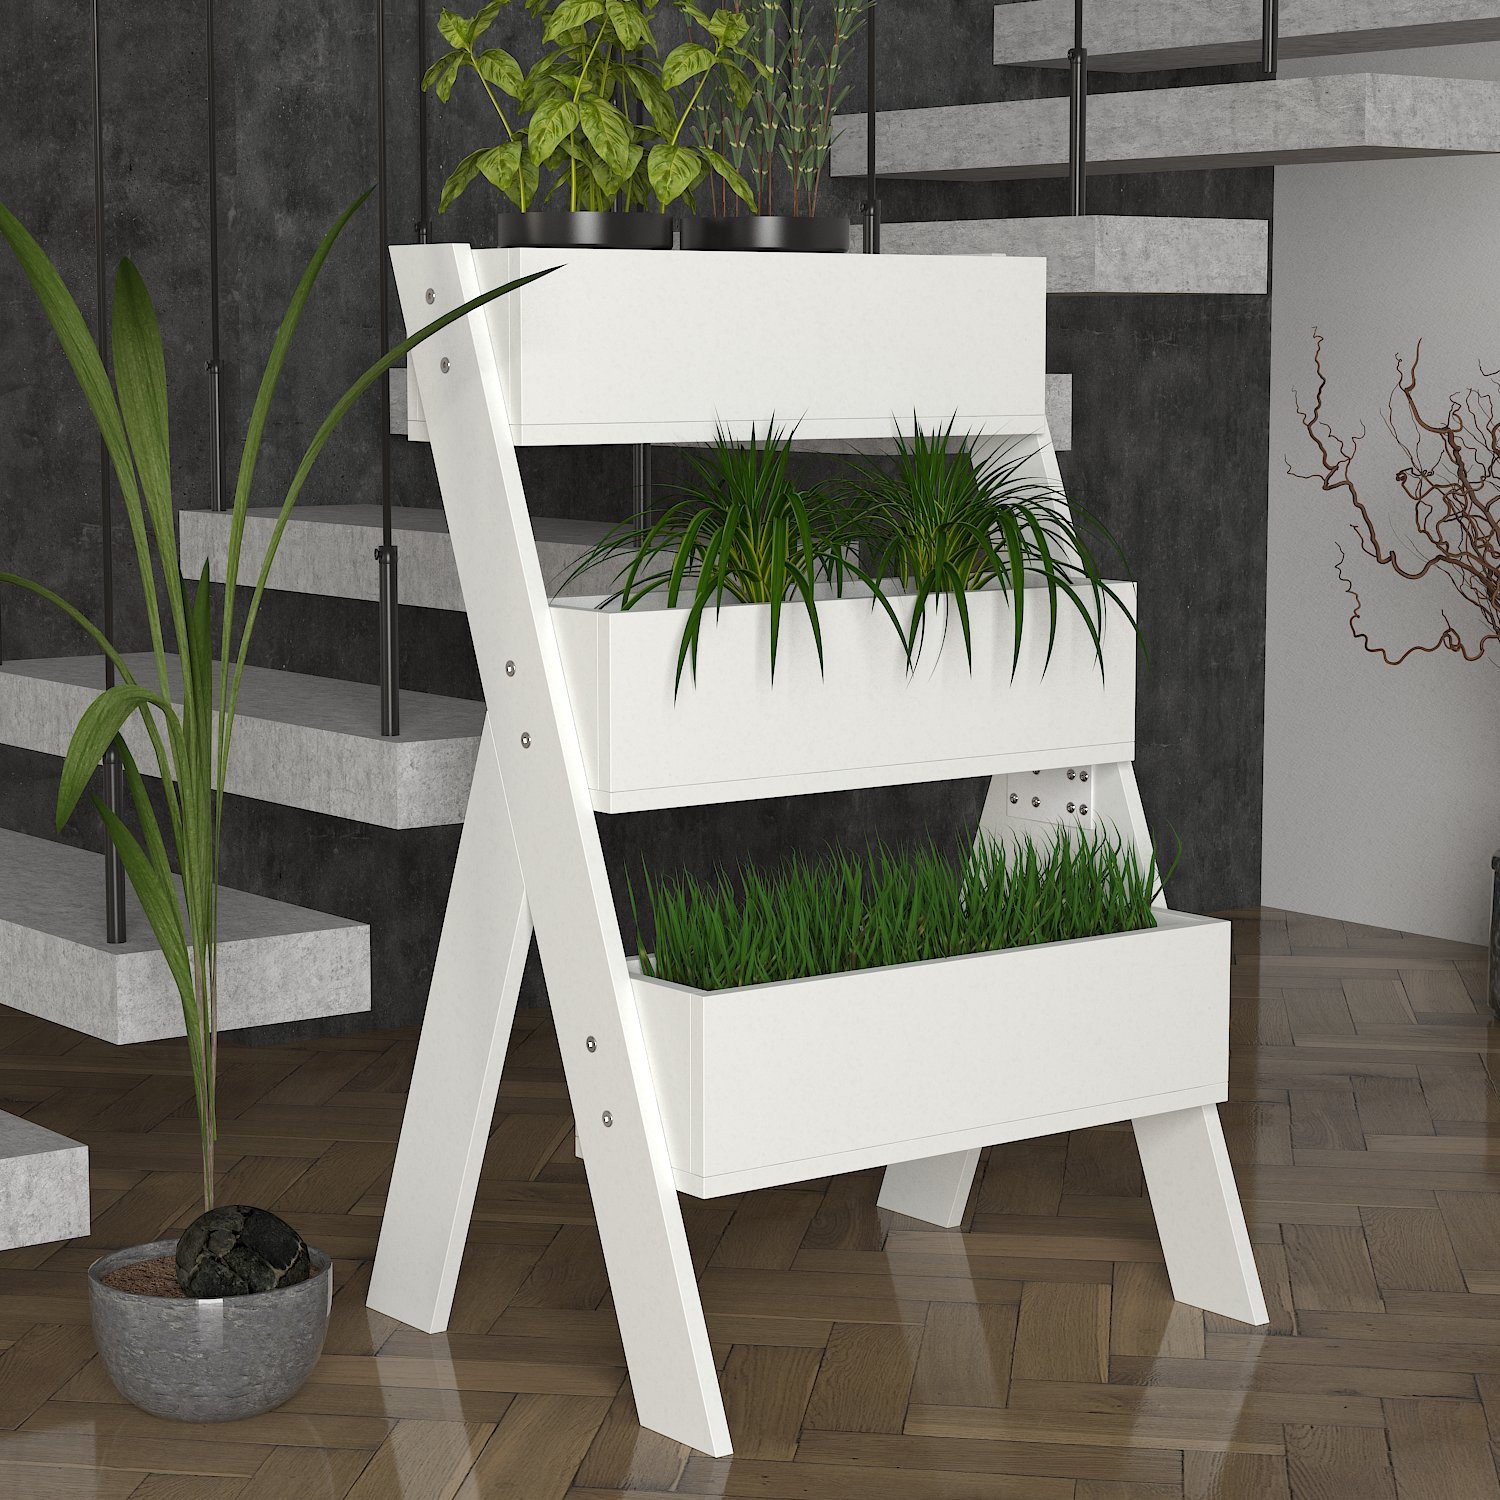 Soporte para plantas Gardenia - Deco design - Compra en Ventis.